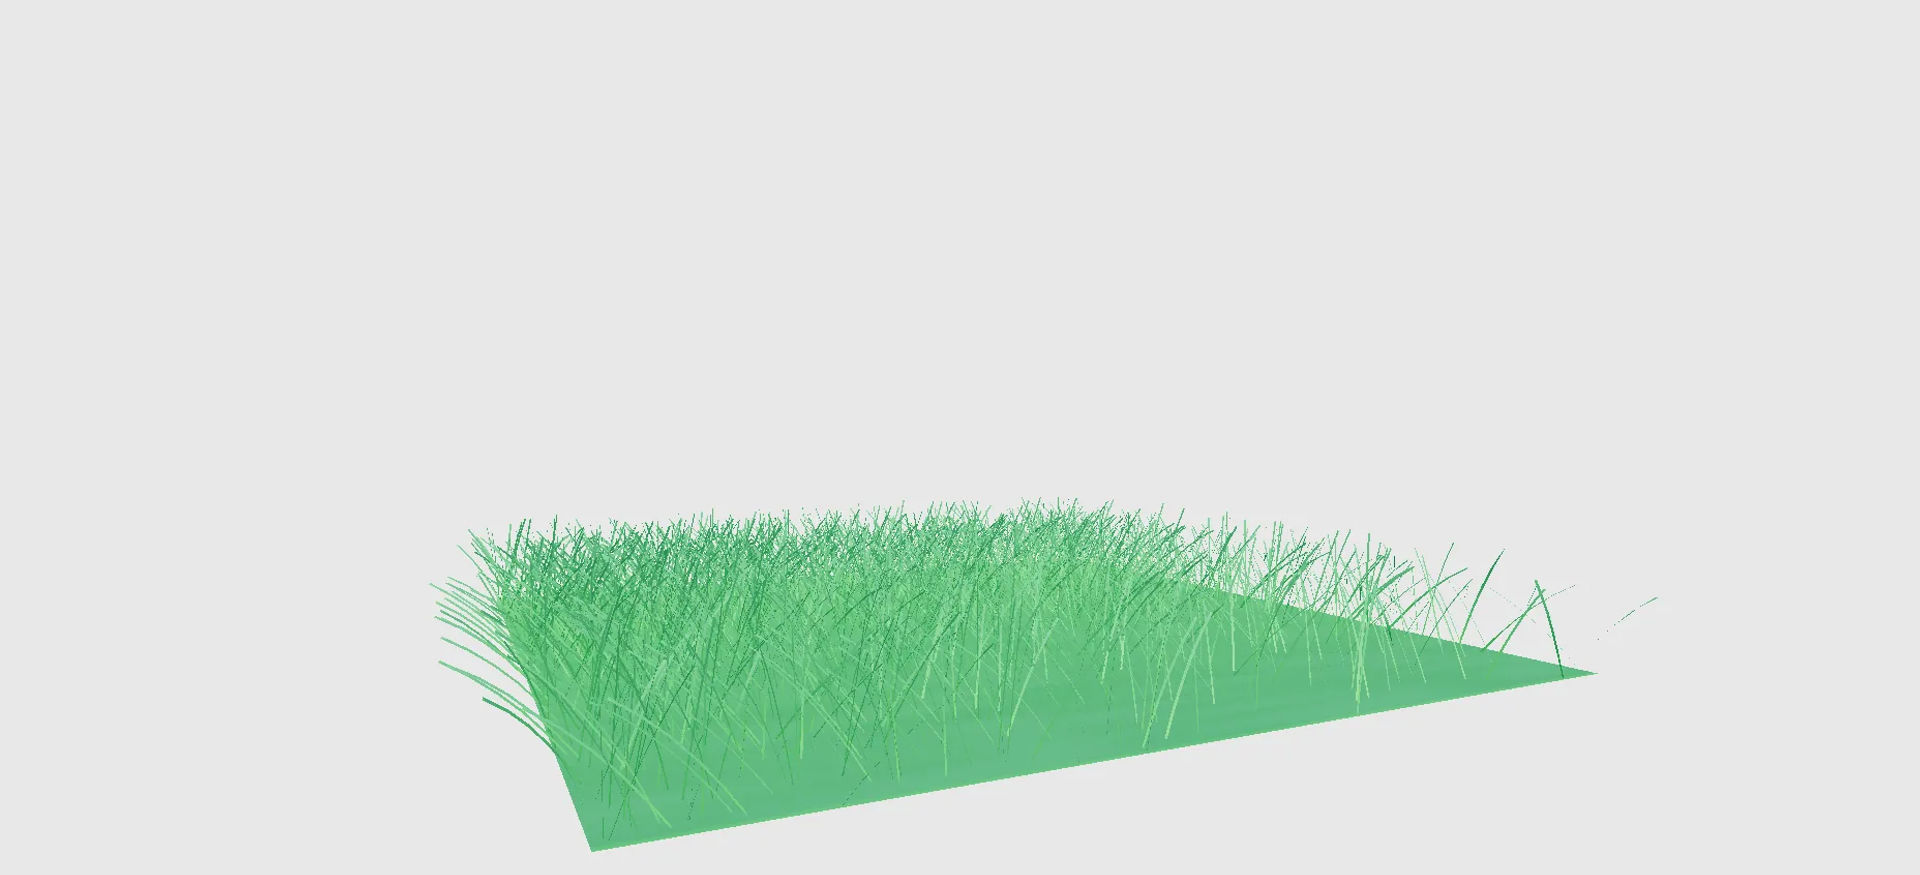 grassy groves grass tile